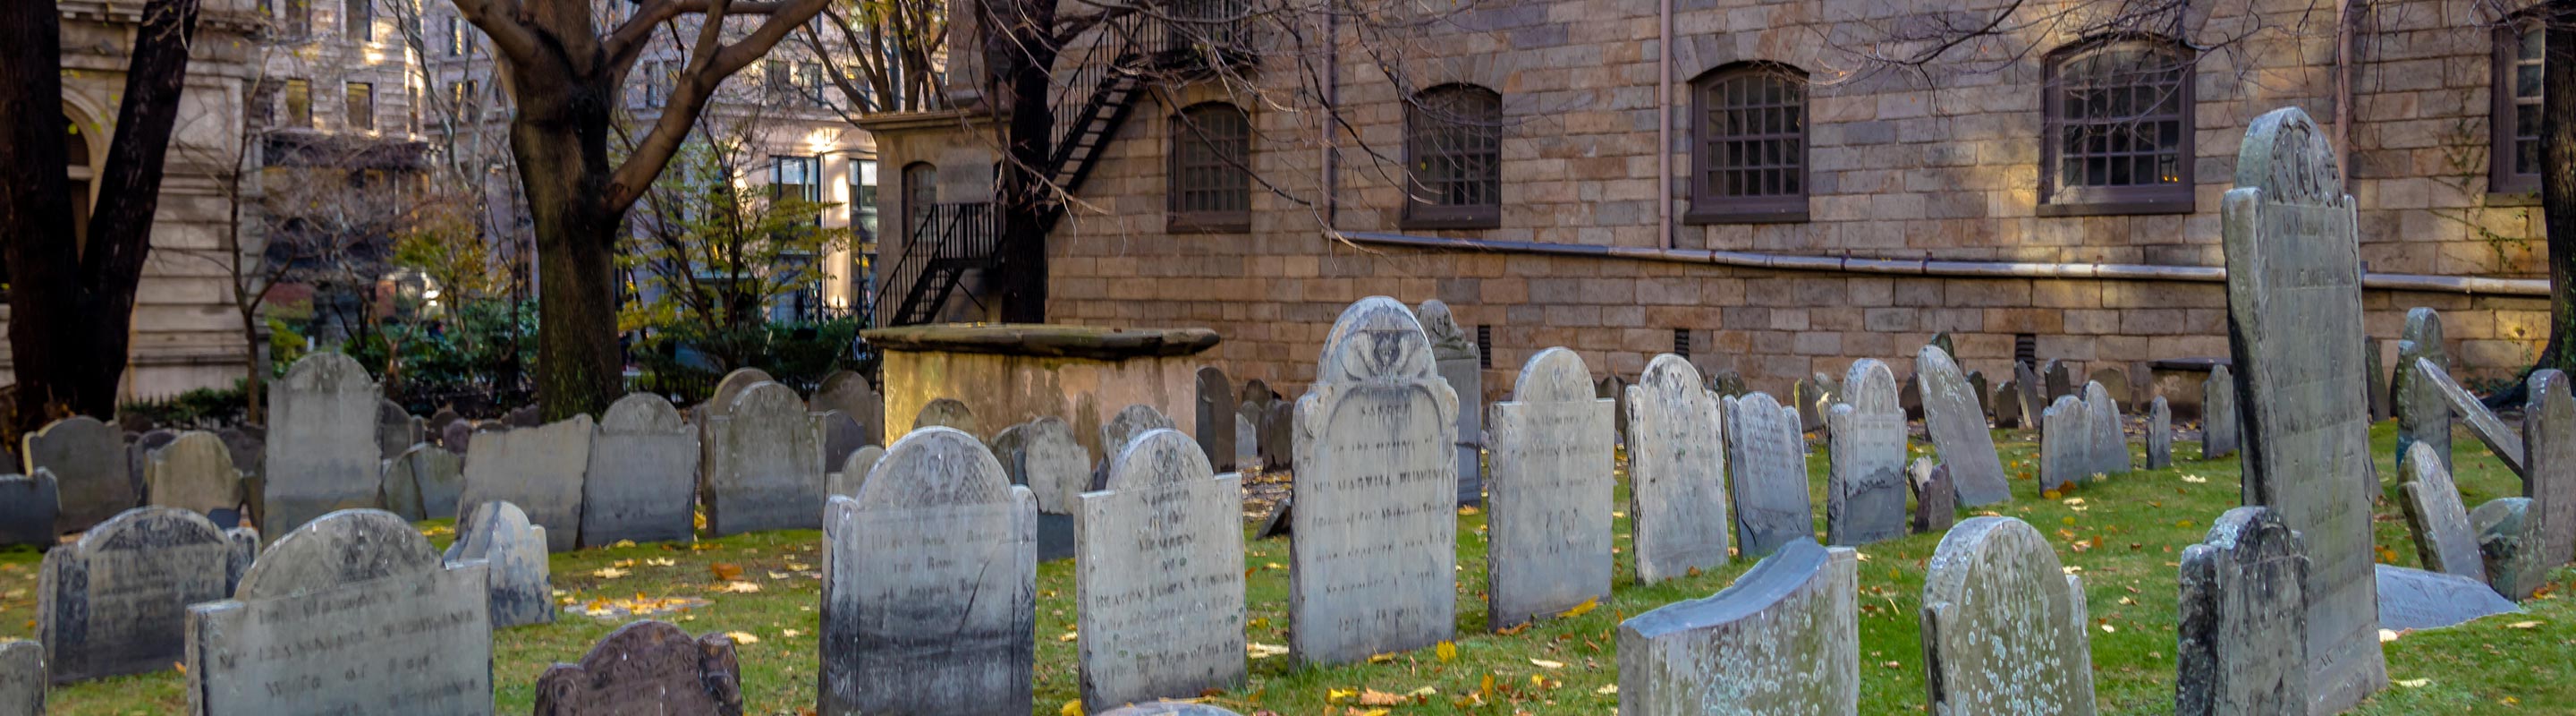 Descubre más sobre los cementerios embrujados de Boston con Ghost City Tours